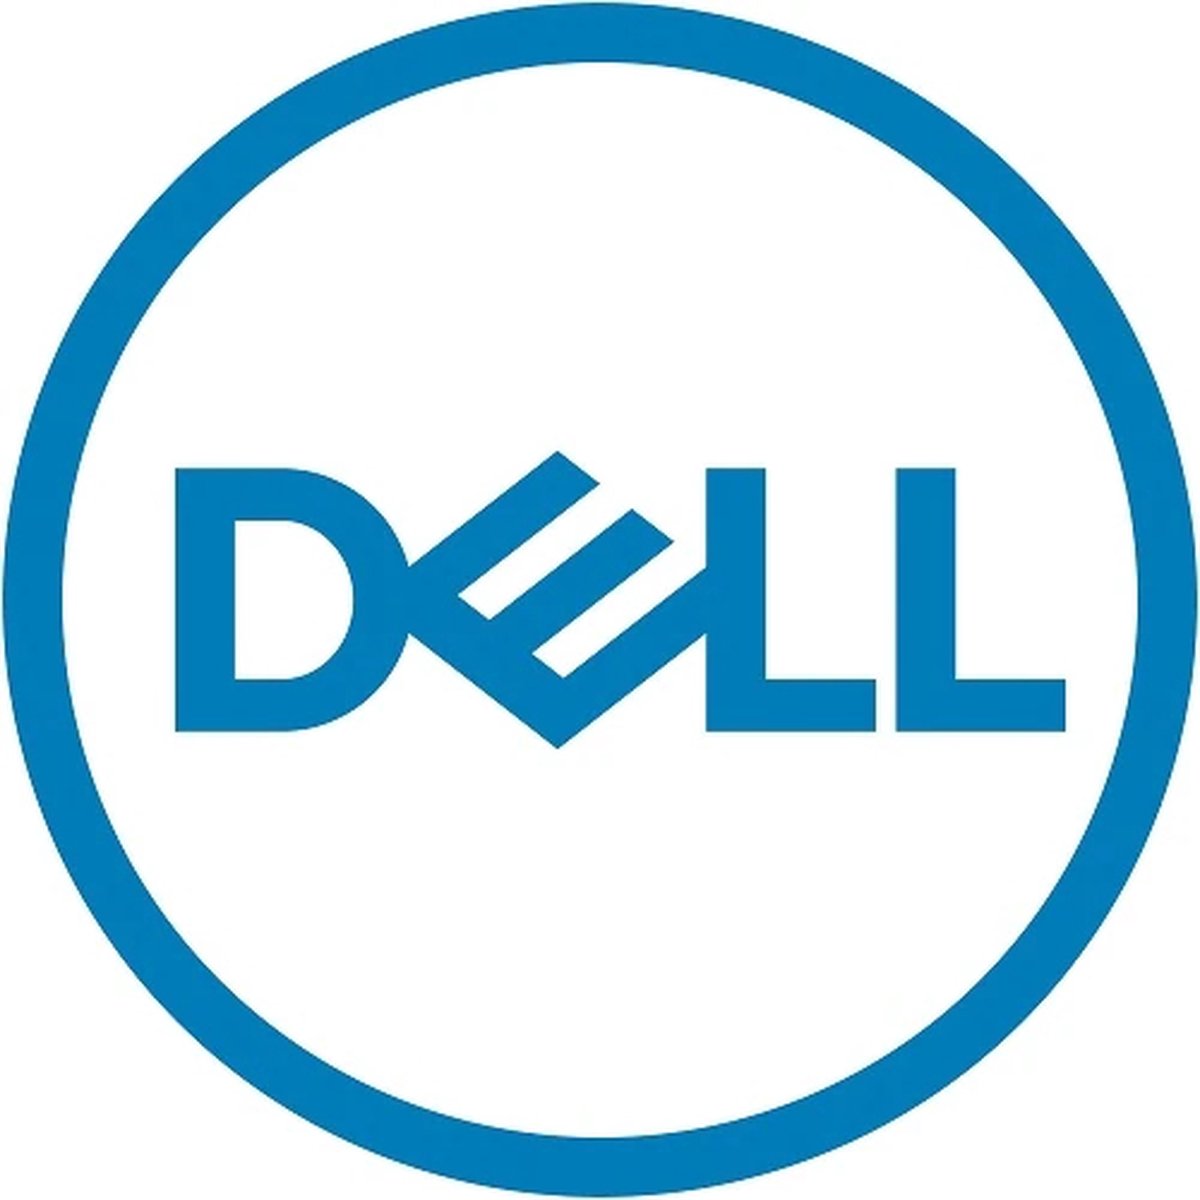 Dell ROK_MS_WS_STD_2019_add lic_2 core